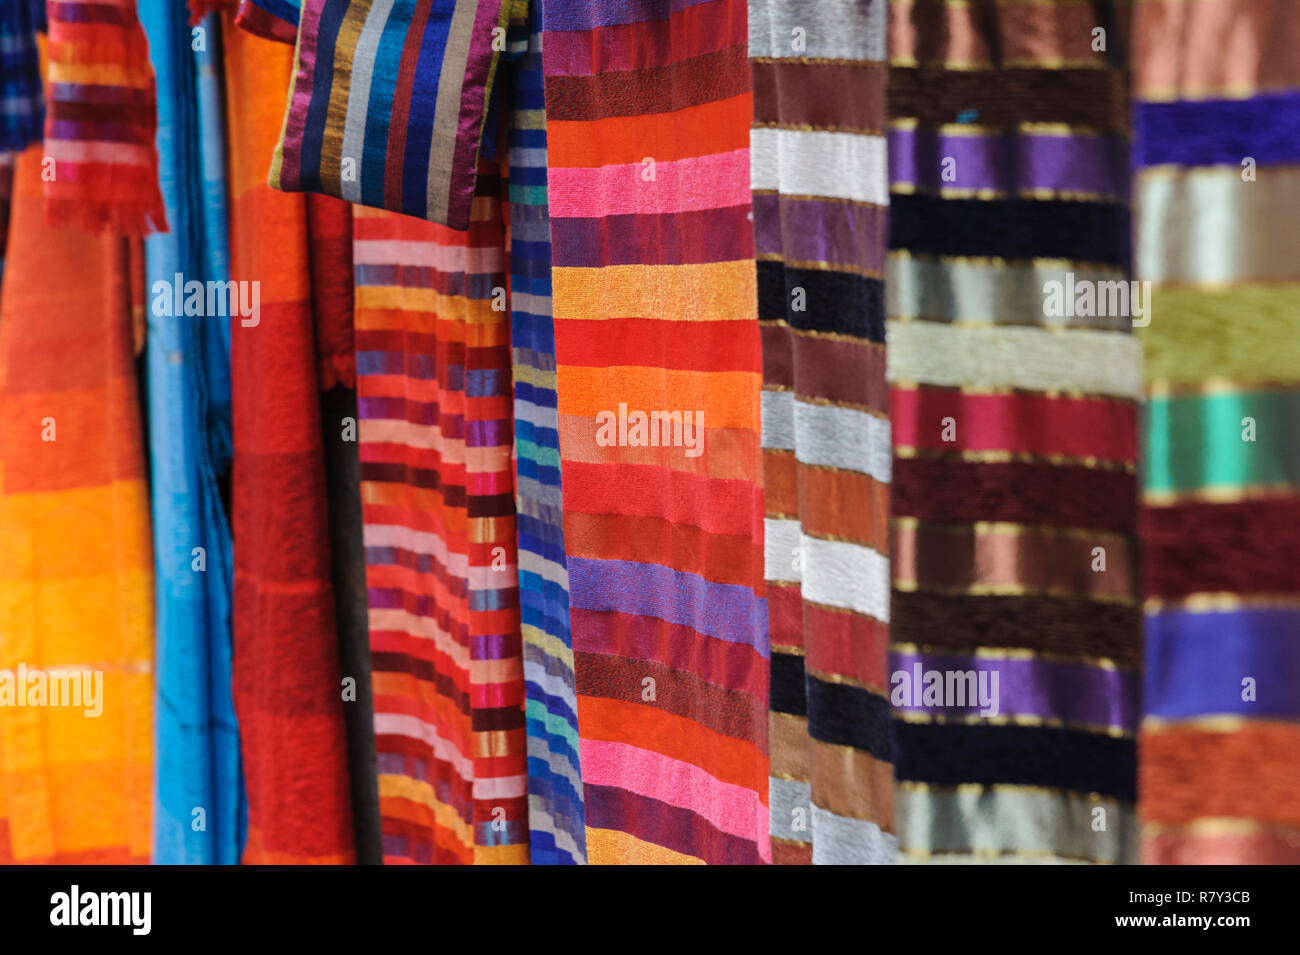 05-03-15, Marrakech, Marruecos. Pañuelos de colores brillantes o tejidos  para su venta fuera de una tienda artesanal en el antiguo, viejo, parte de  la ciudad. Foto: © IS Fotografía de stock - Alamy